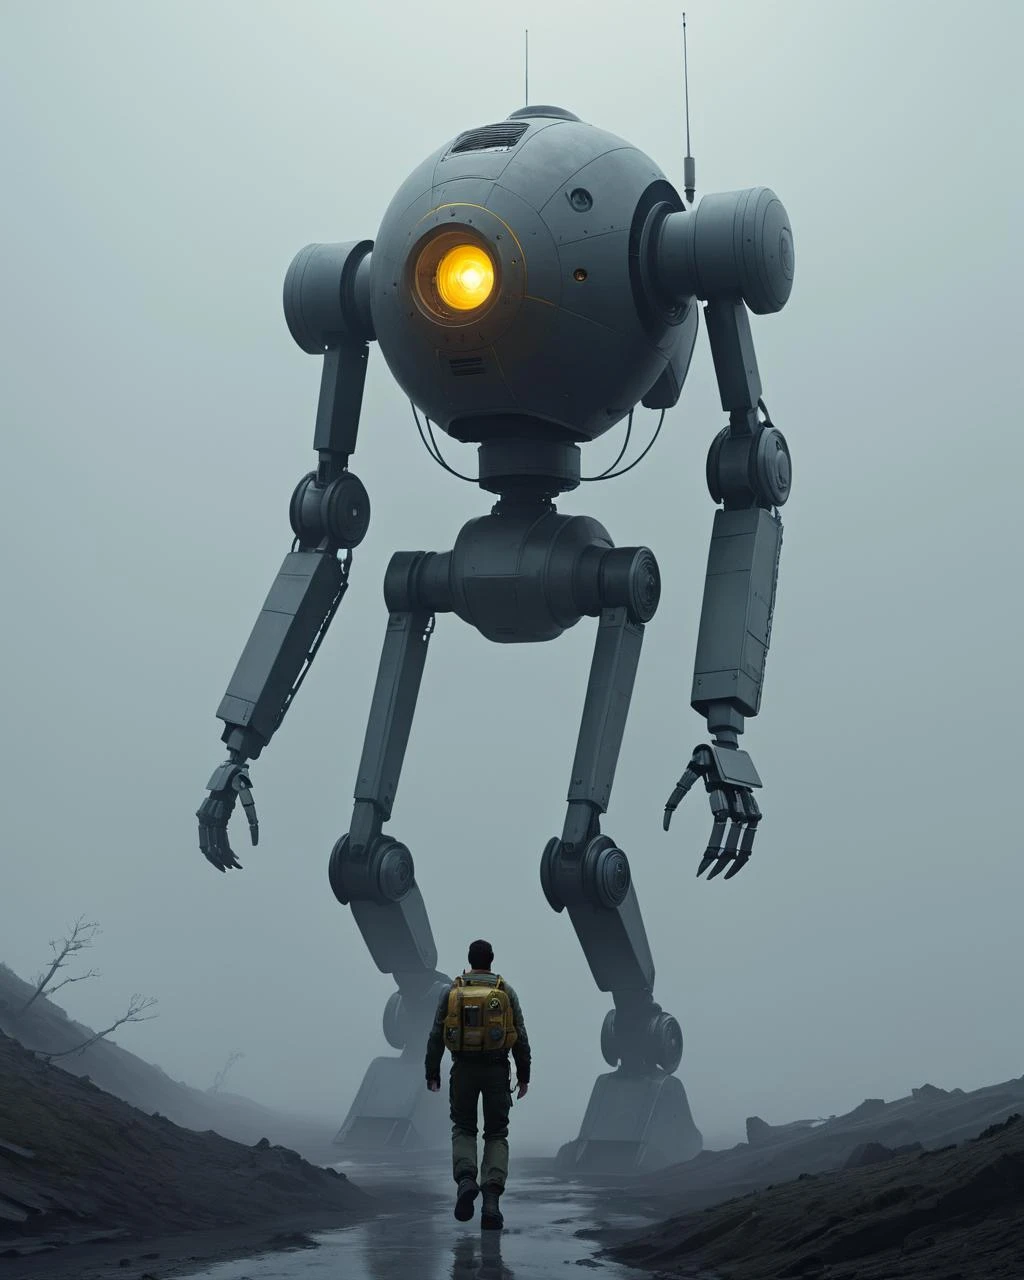 大きなロボットが霧の中を歩いているコンセプトアート, ヴォイテク・フュース, ドラマチックなSF映画の静止画, ルドヴィク・コナシェフスキー著 Jr, ロザルスキ, アルトゥール・タルノウスキー著, アダム・マルチンスキー著, 映画のコンセプトアート, ルドヴィク・コナシェフスキー著, 宇宙戦争, SFイラスト . デジタルアート, 説明的な, 絵画的な, マットペイント, 非常に詳細な